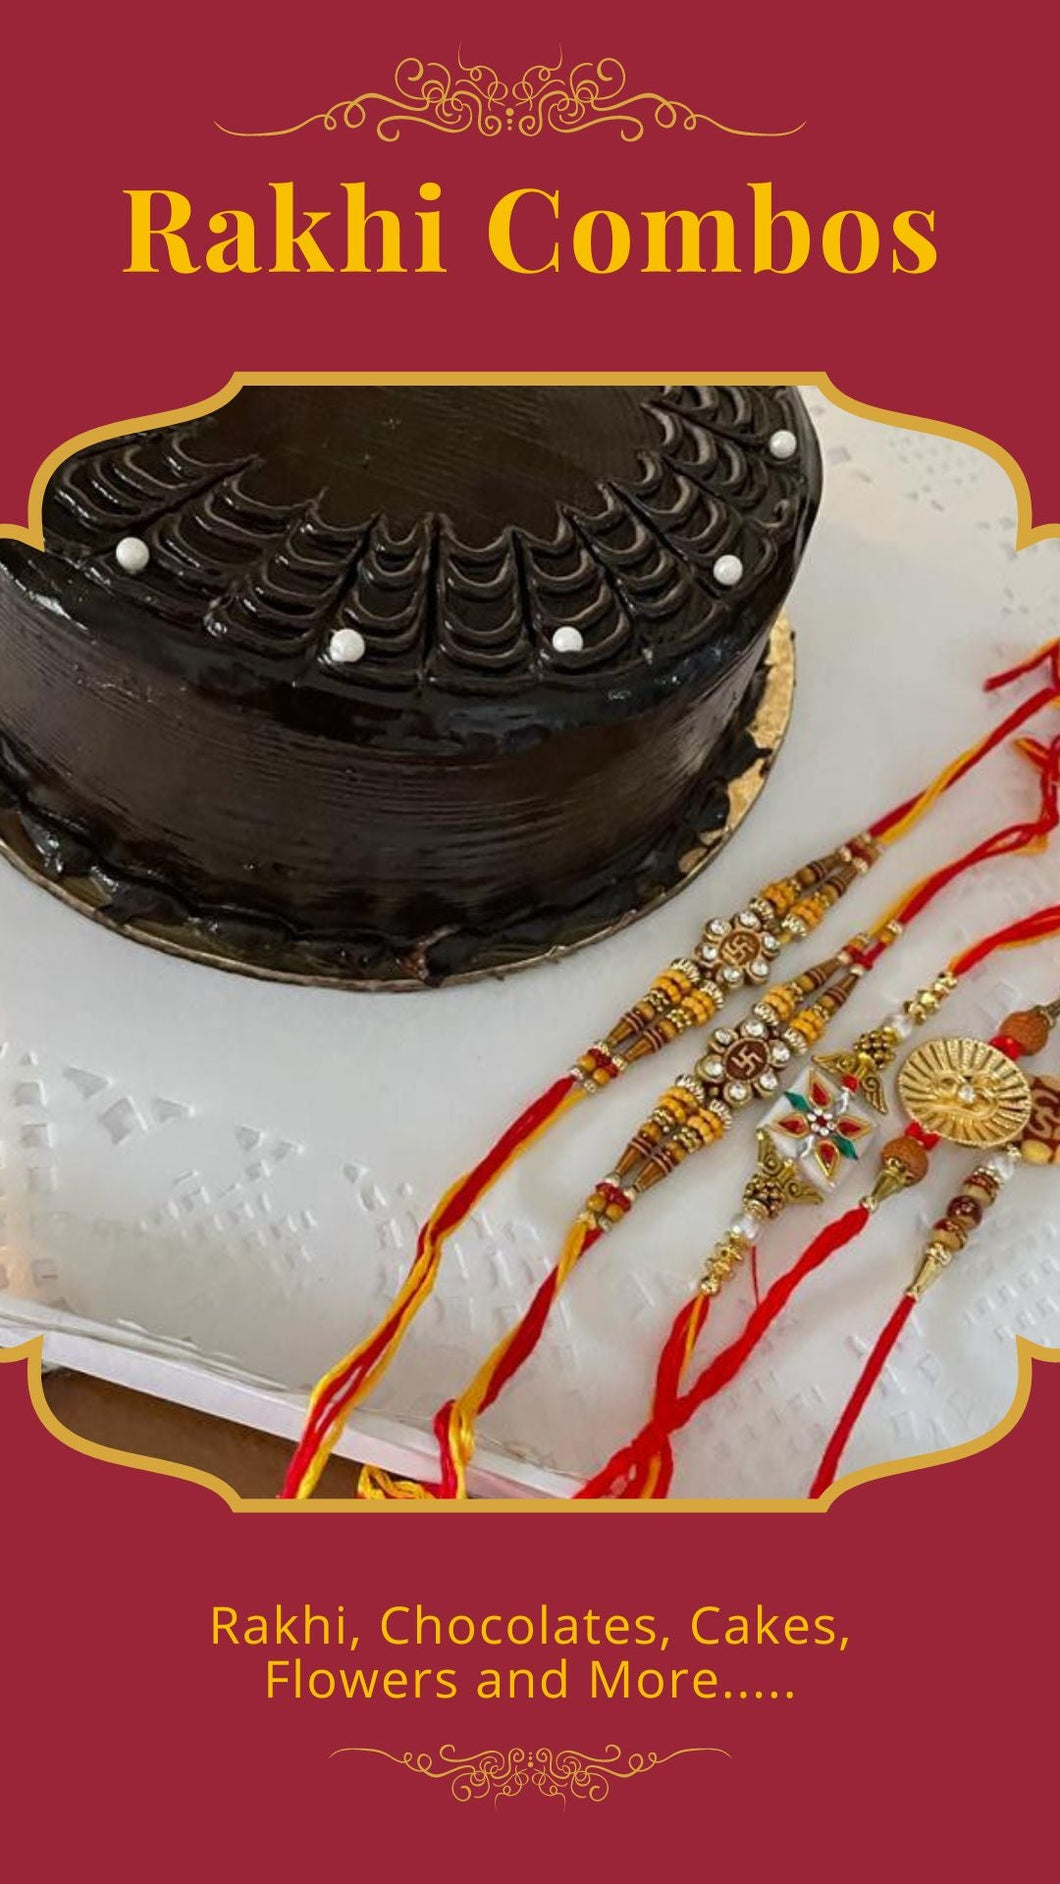 Rakhi Gift - Flowers, Chocolates & Cake Combo - Choose any flavour Indiaflorist247